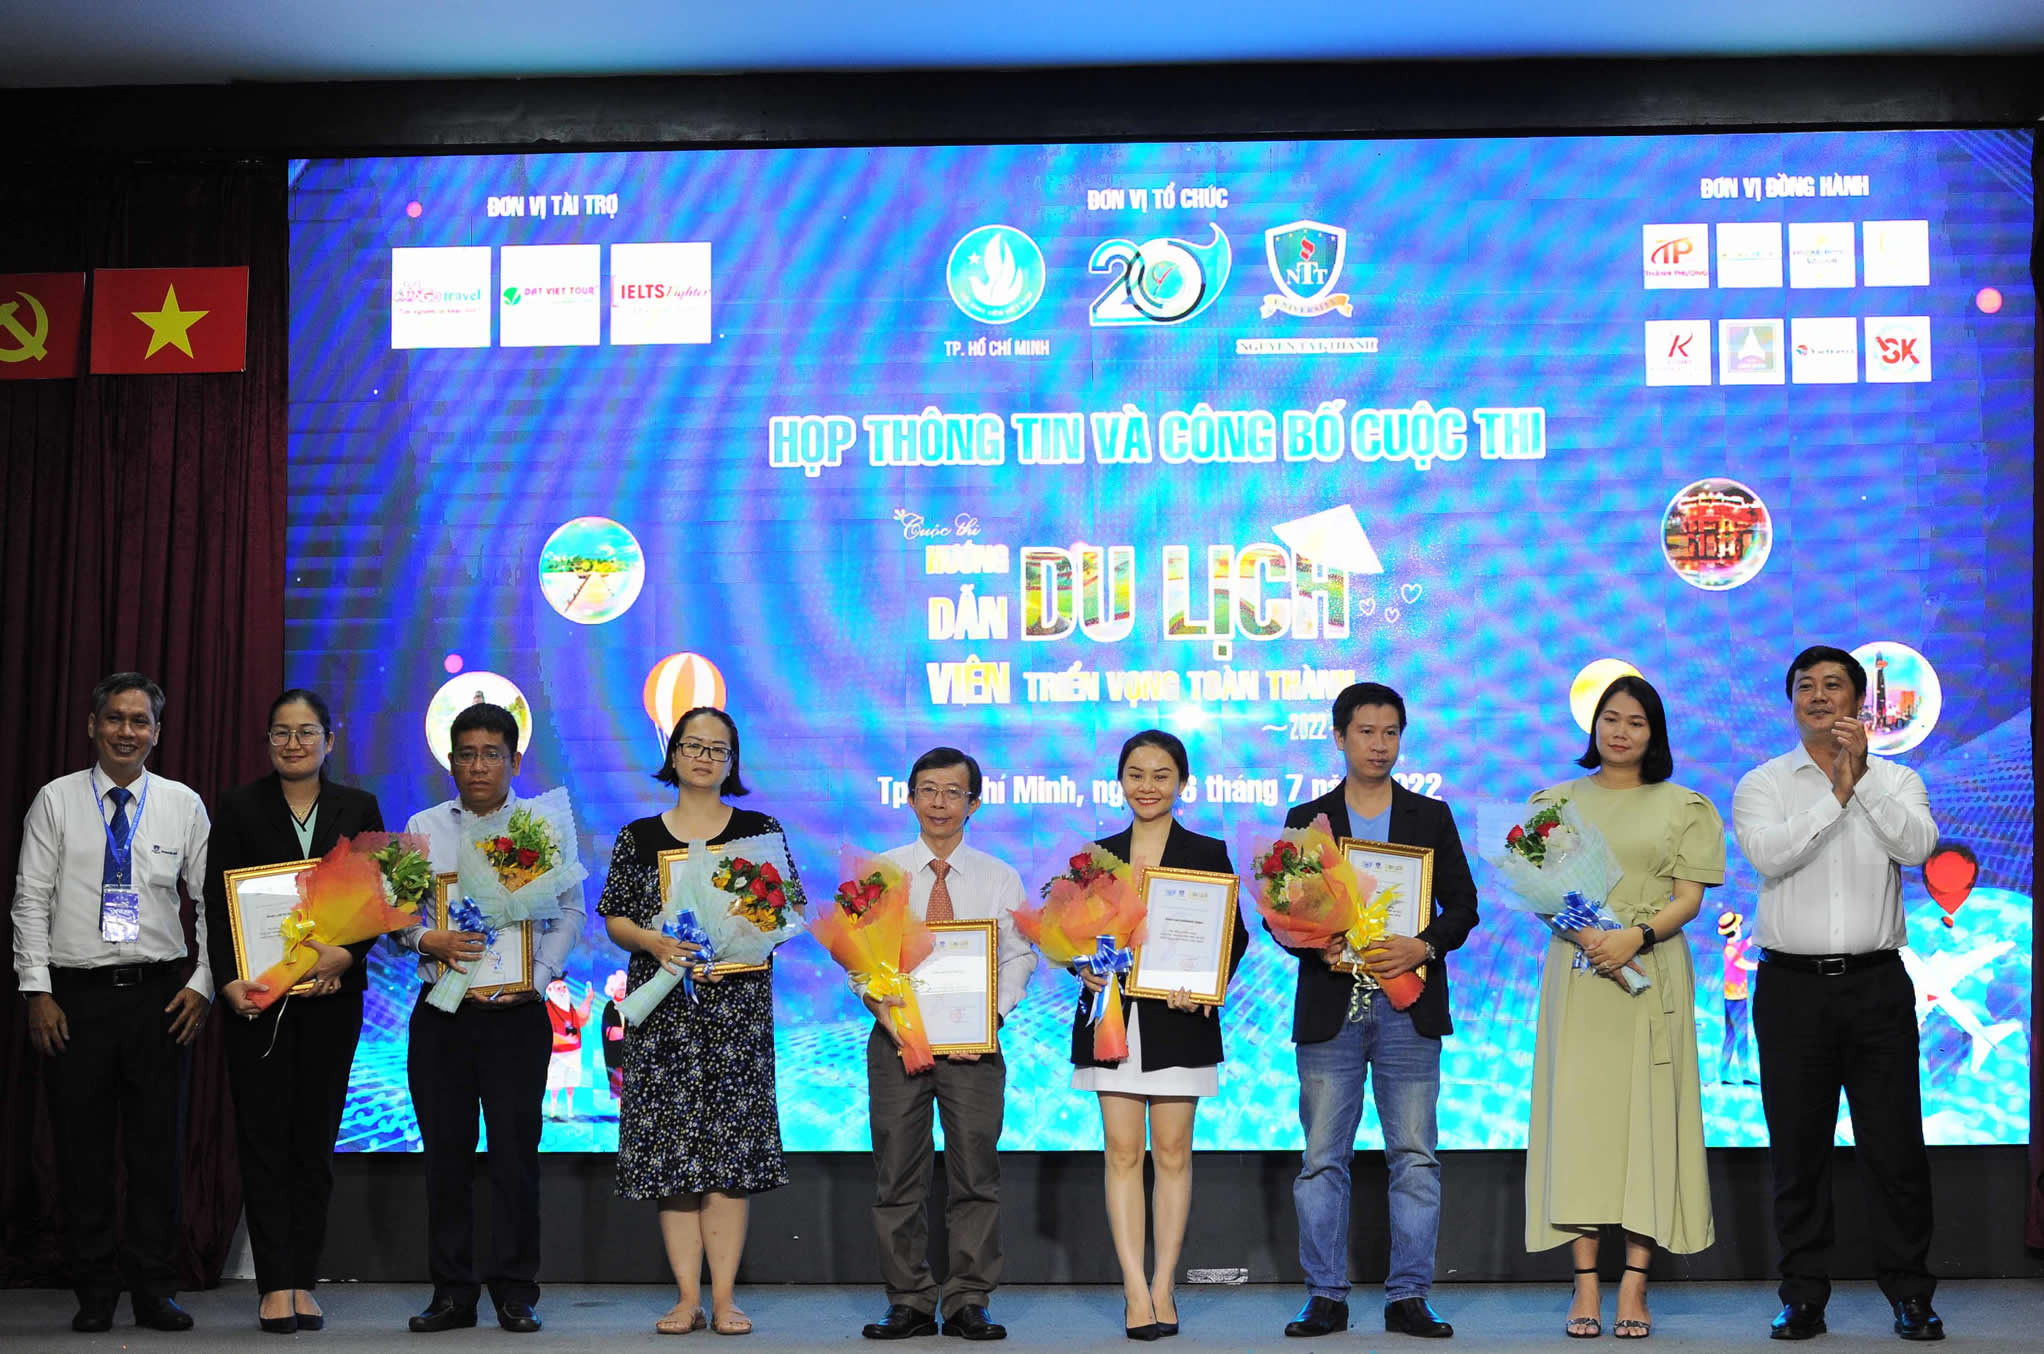 Đại diện Đất Việt Tour cùng các đơn vị tài trợ nhận hoa và cảm ơn từ ban tổ chức cuộc thi.